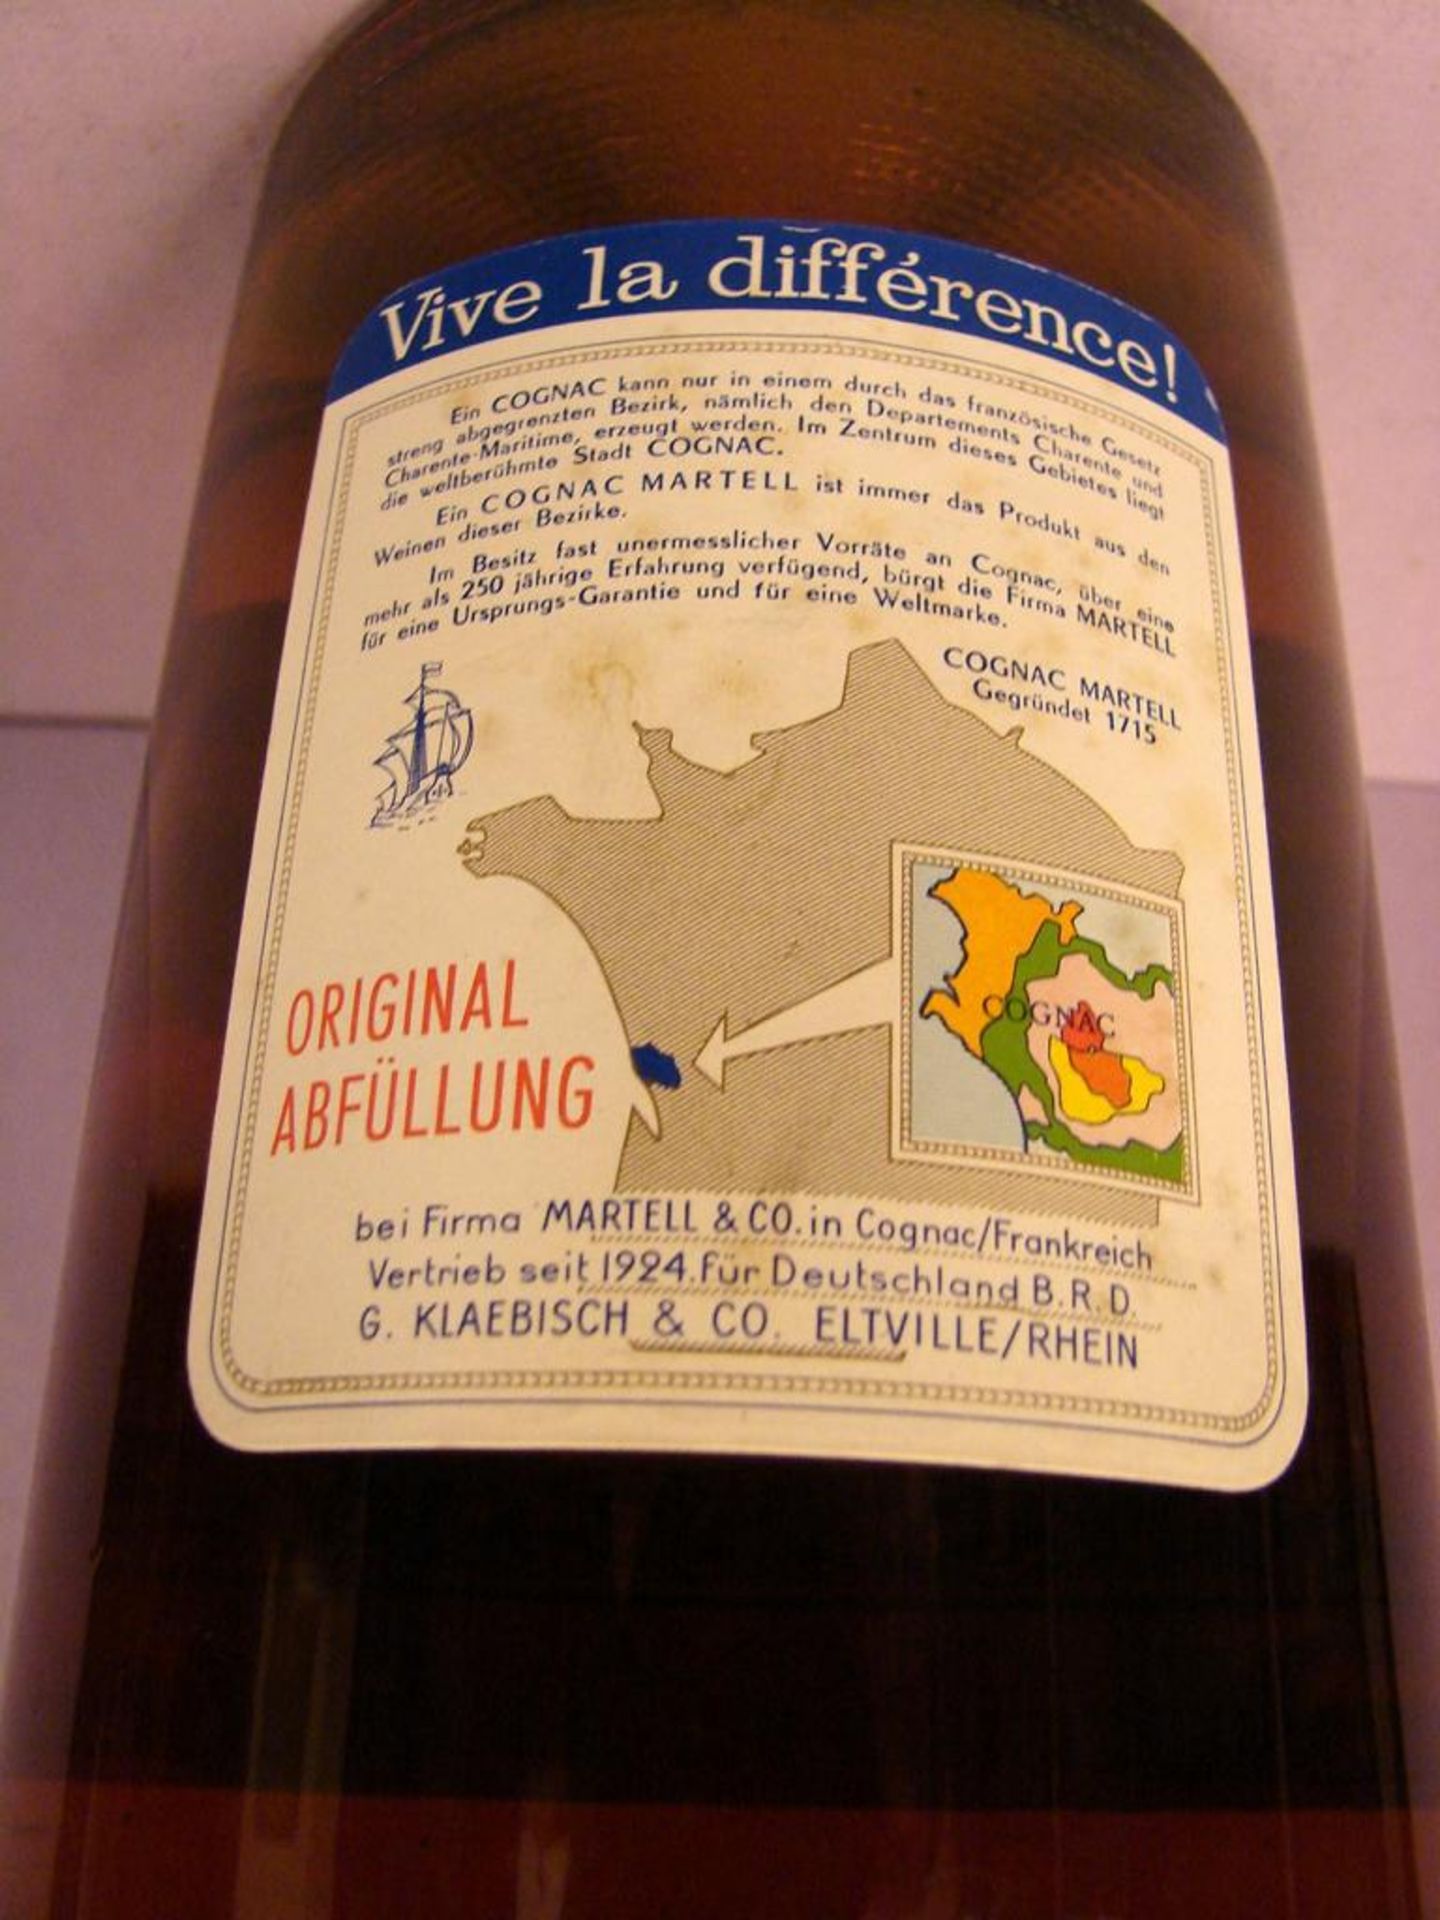 Cognac, Martell, 1,5 Liter Flasche, Gastronomie - Bild 2 aus 3